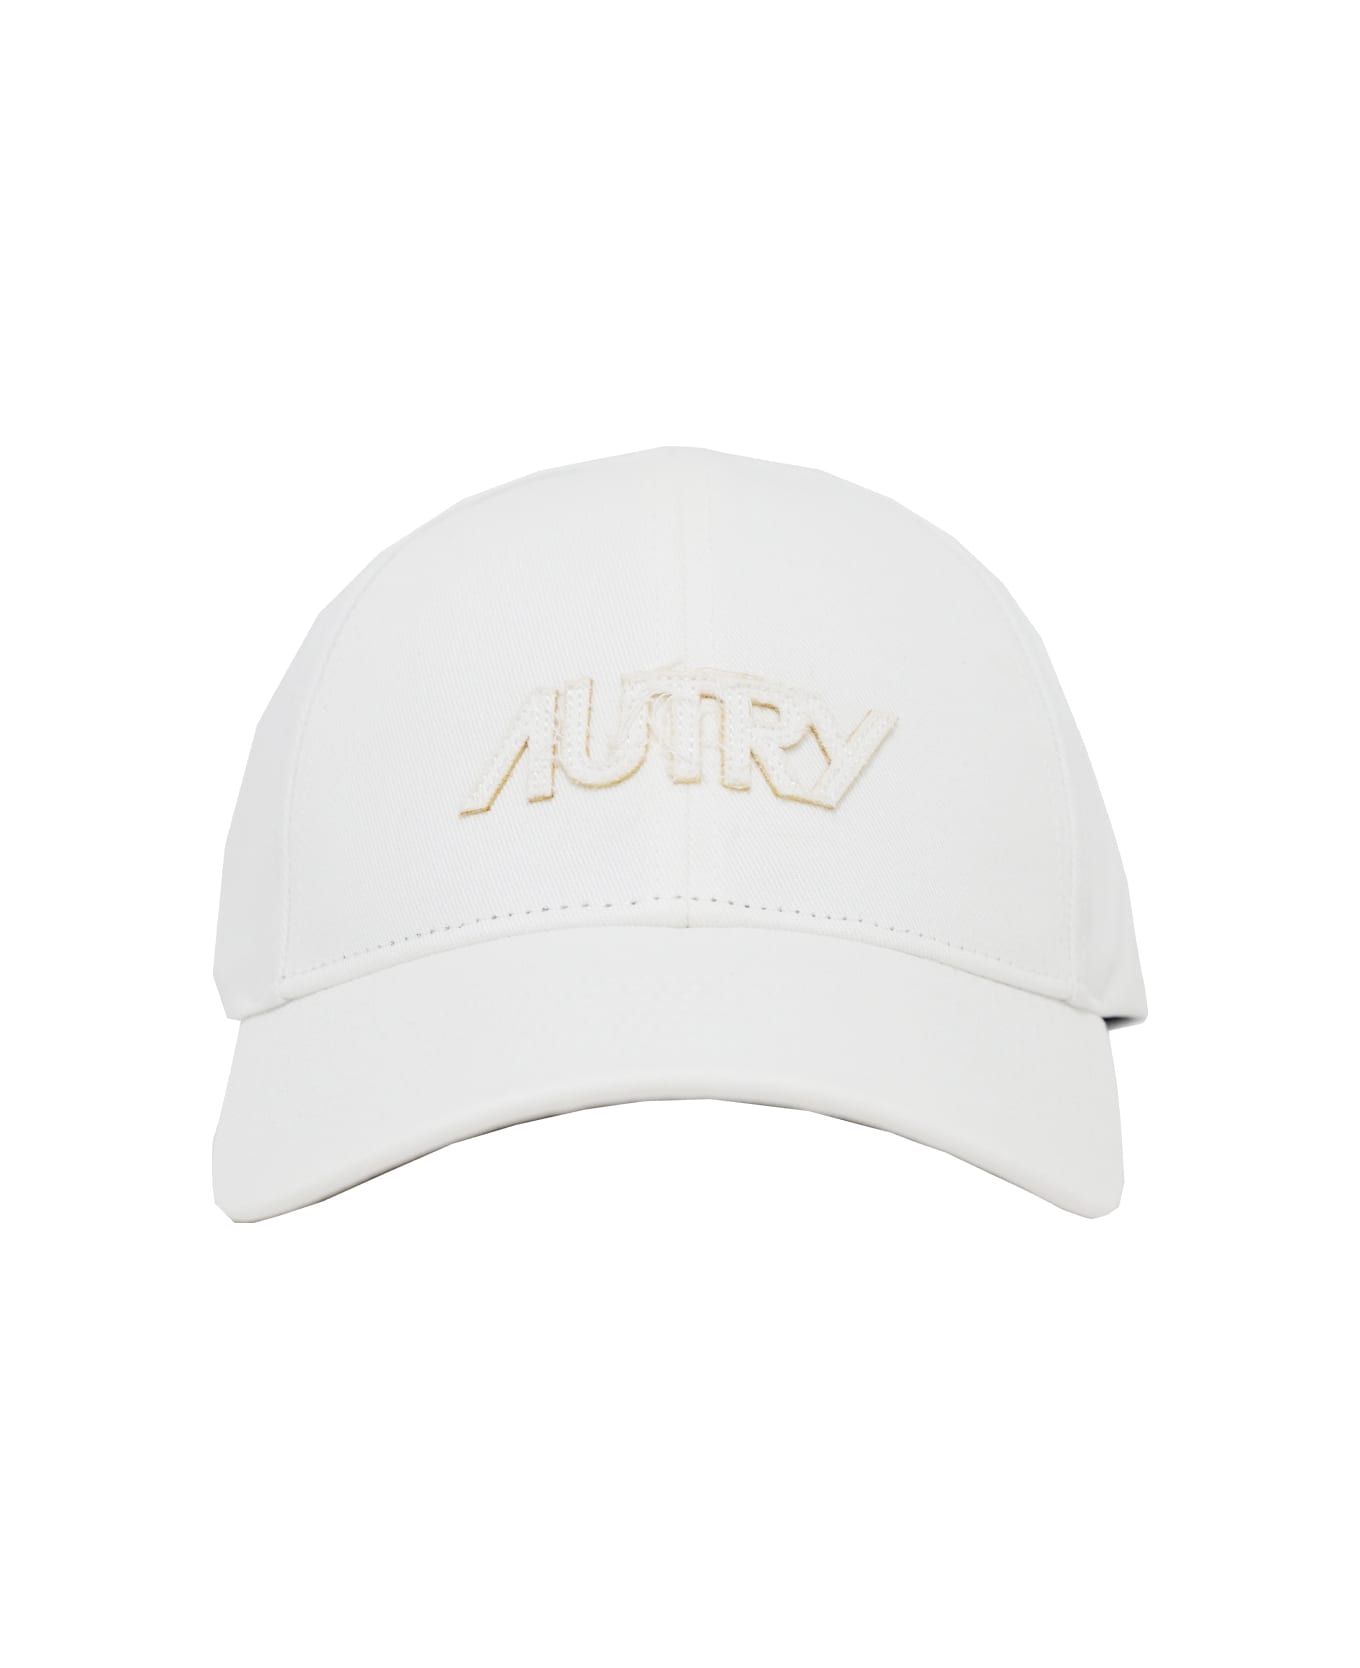 Autry Hat - White